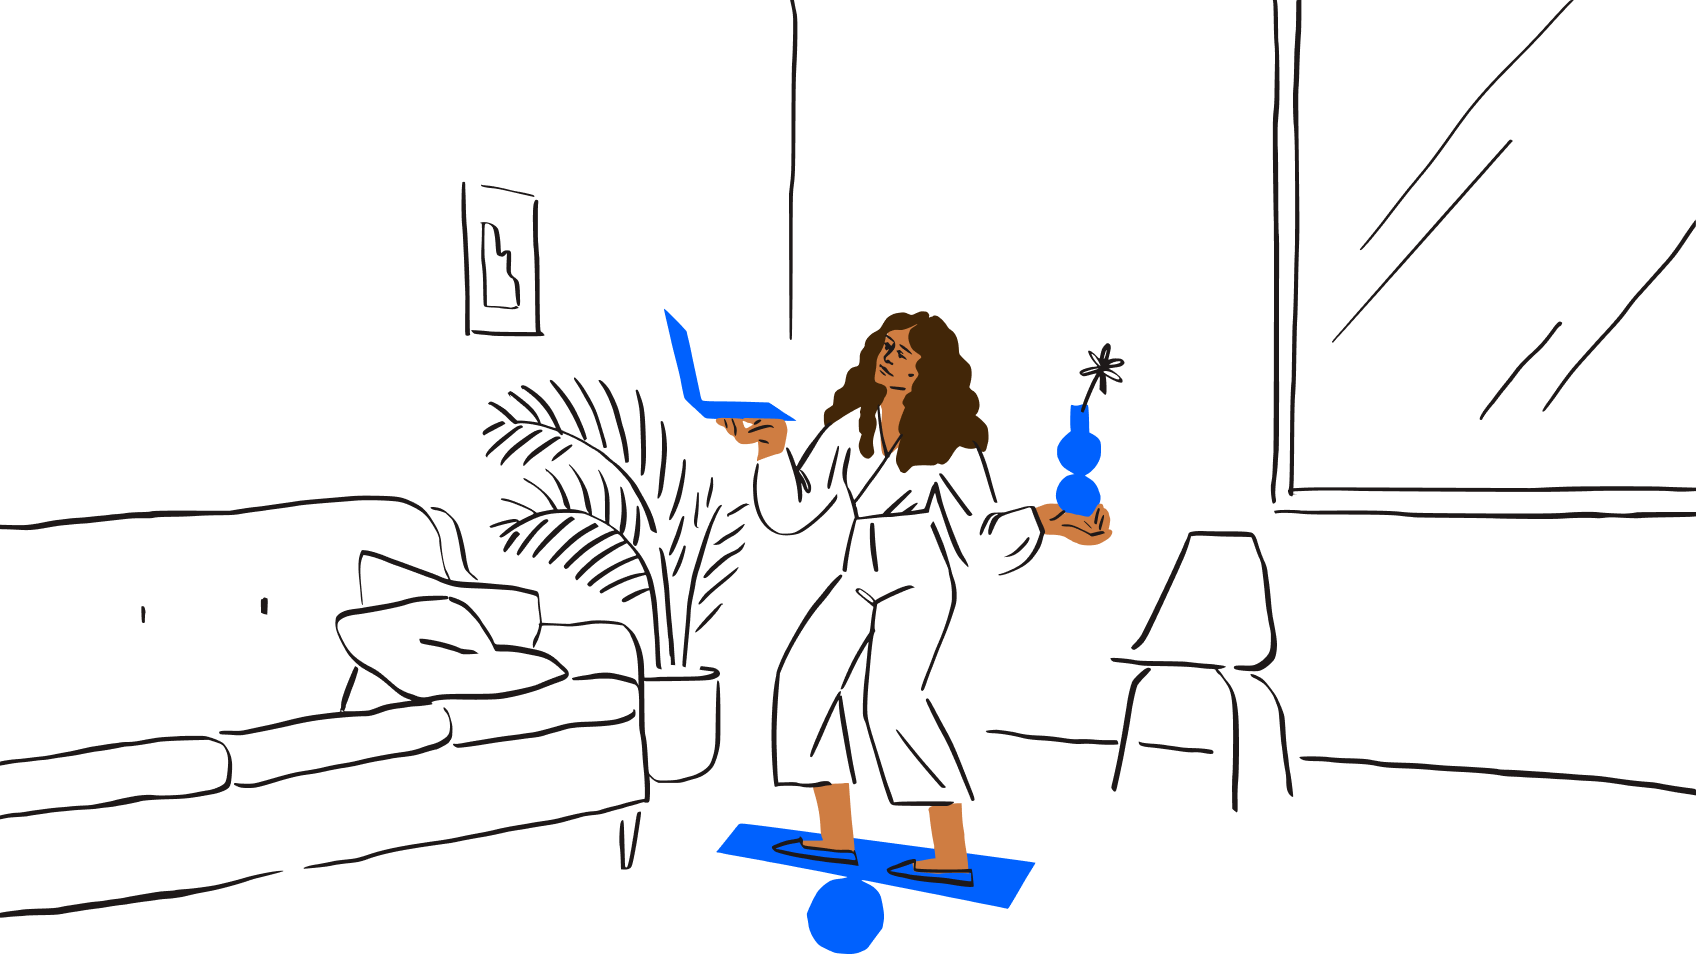 En illustration af en person, der holder en bærbar computer og en stueplante og samtidig står på et balancebræt – som en repræsentation af udfordringerne ved multitasking.